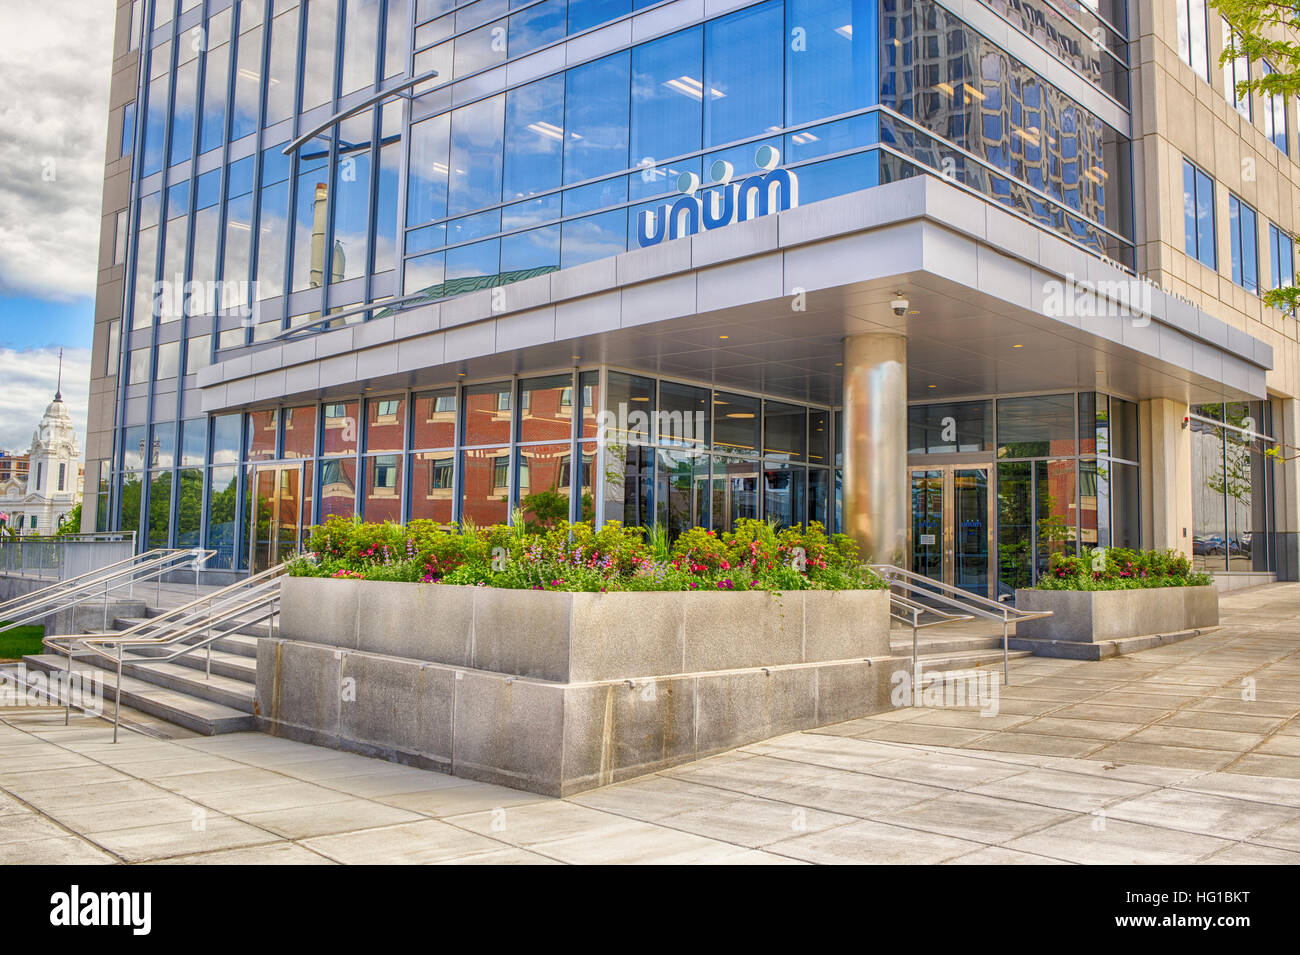 UNUM est une compagnie d'assurances situé dans le centre-ville de Worcester (Massachusetts) Banque D'Images